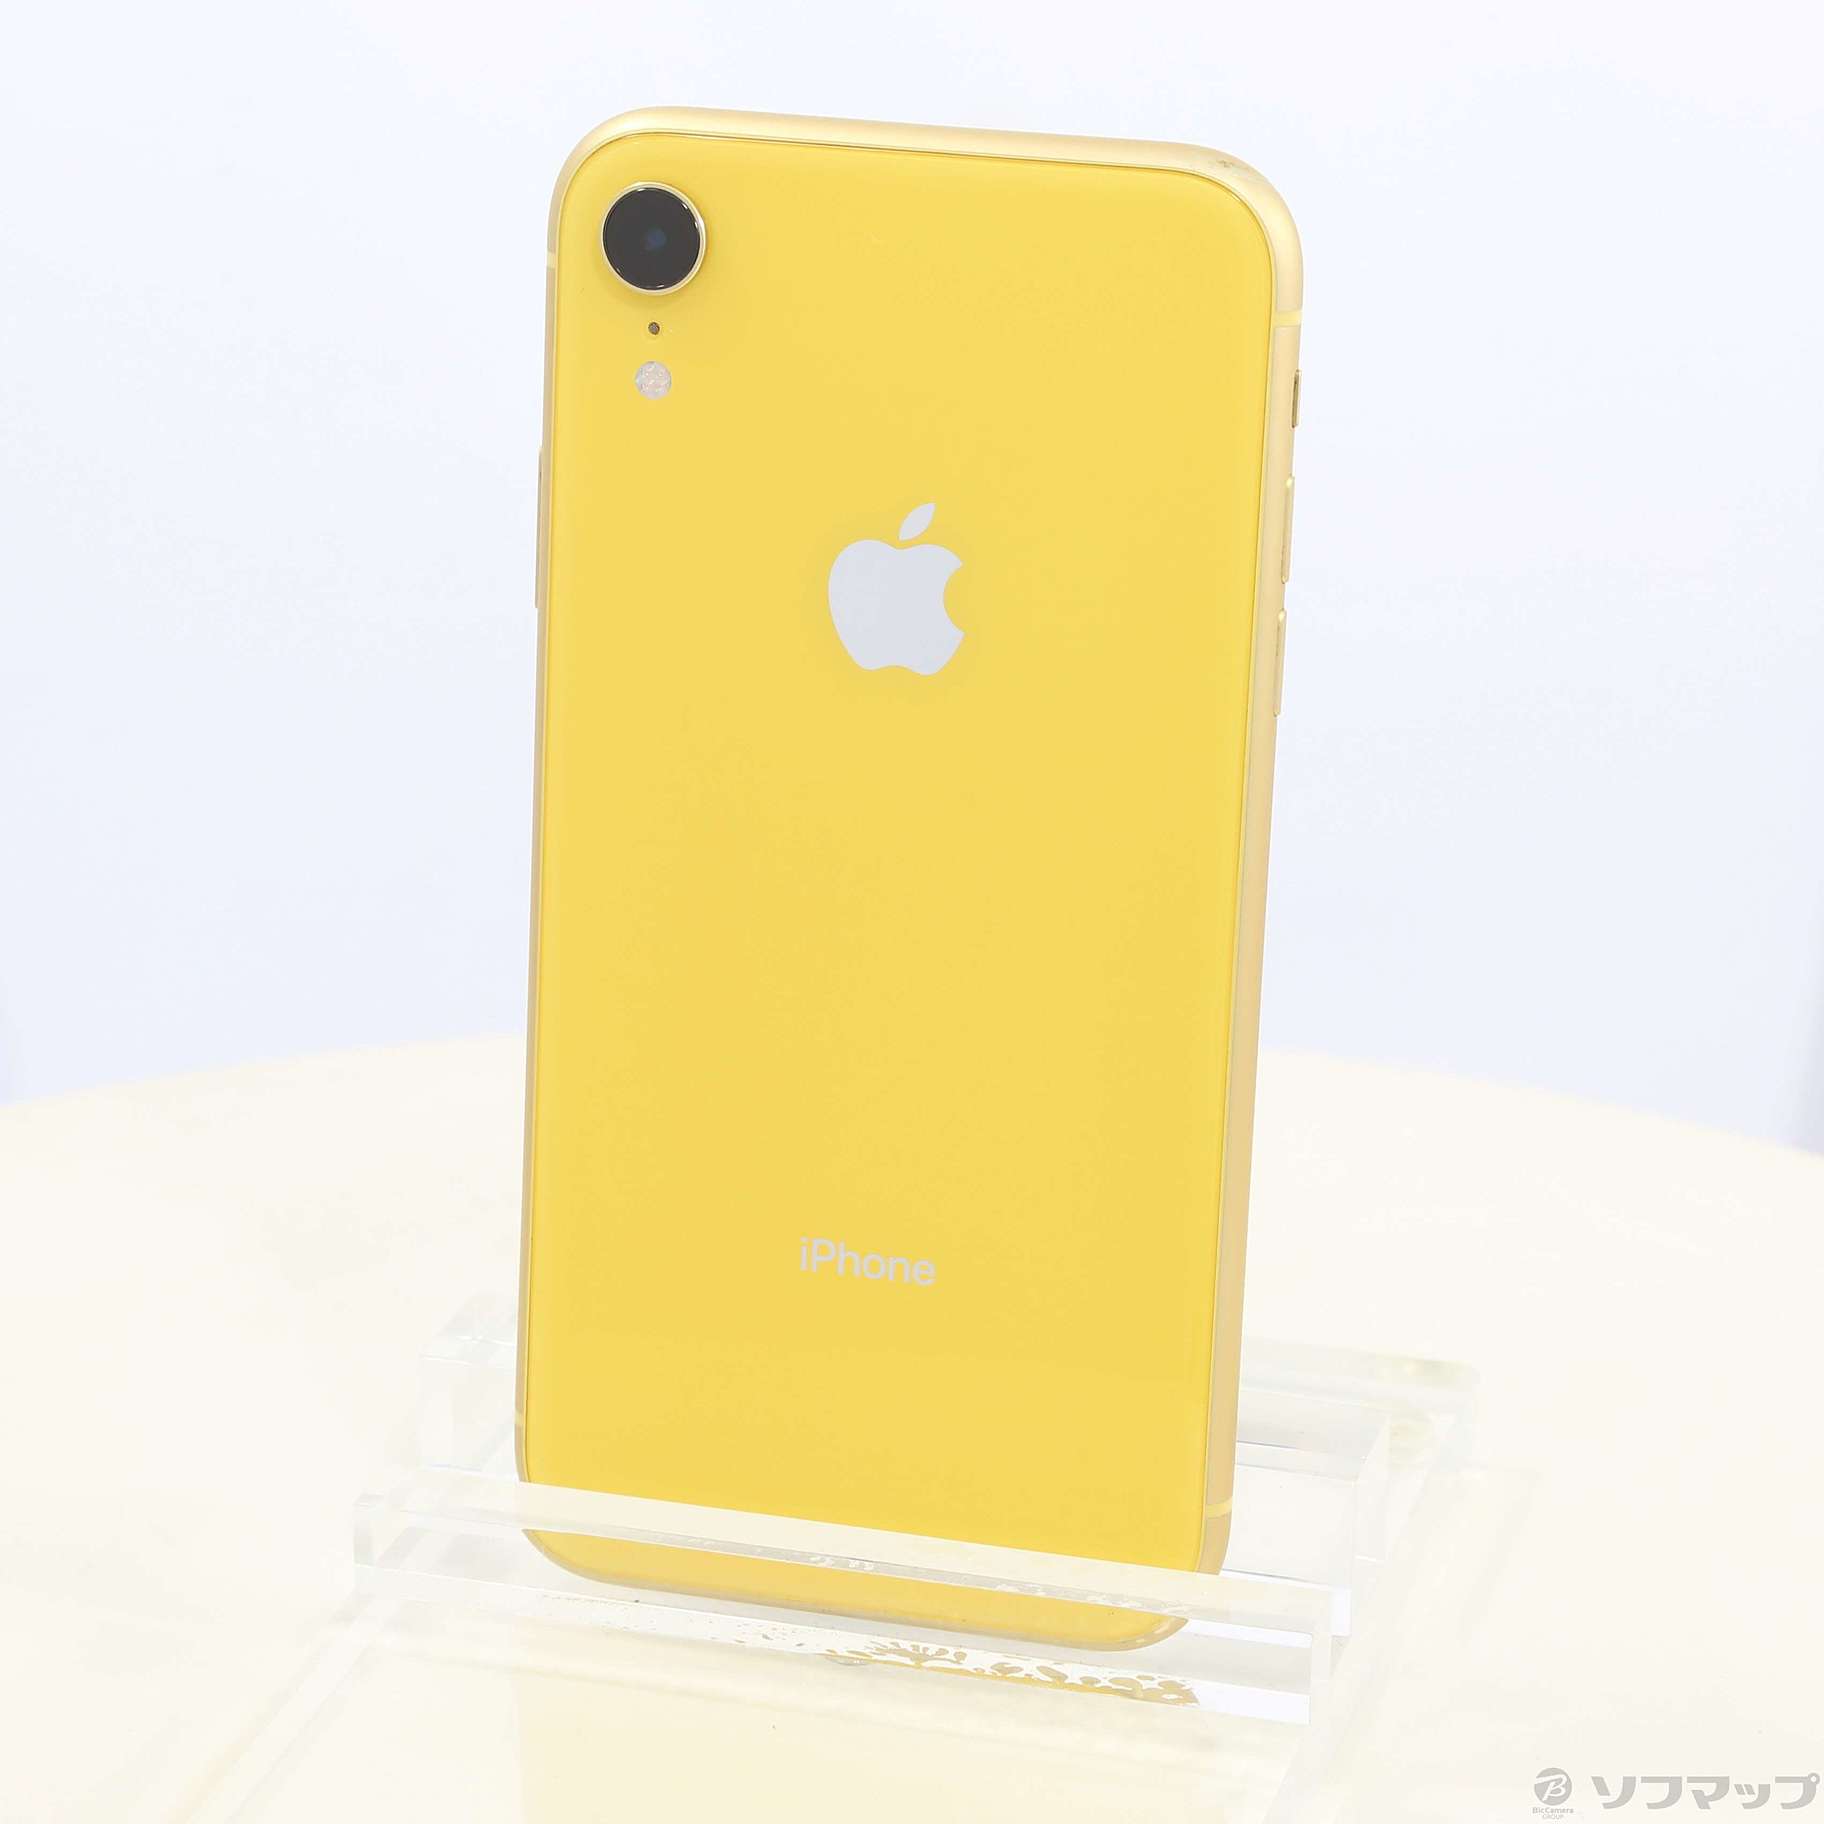 9,200円iPhone XR Yellow 256 GB SIMフリー